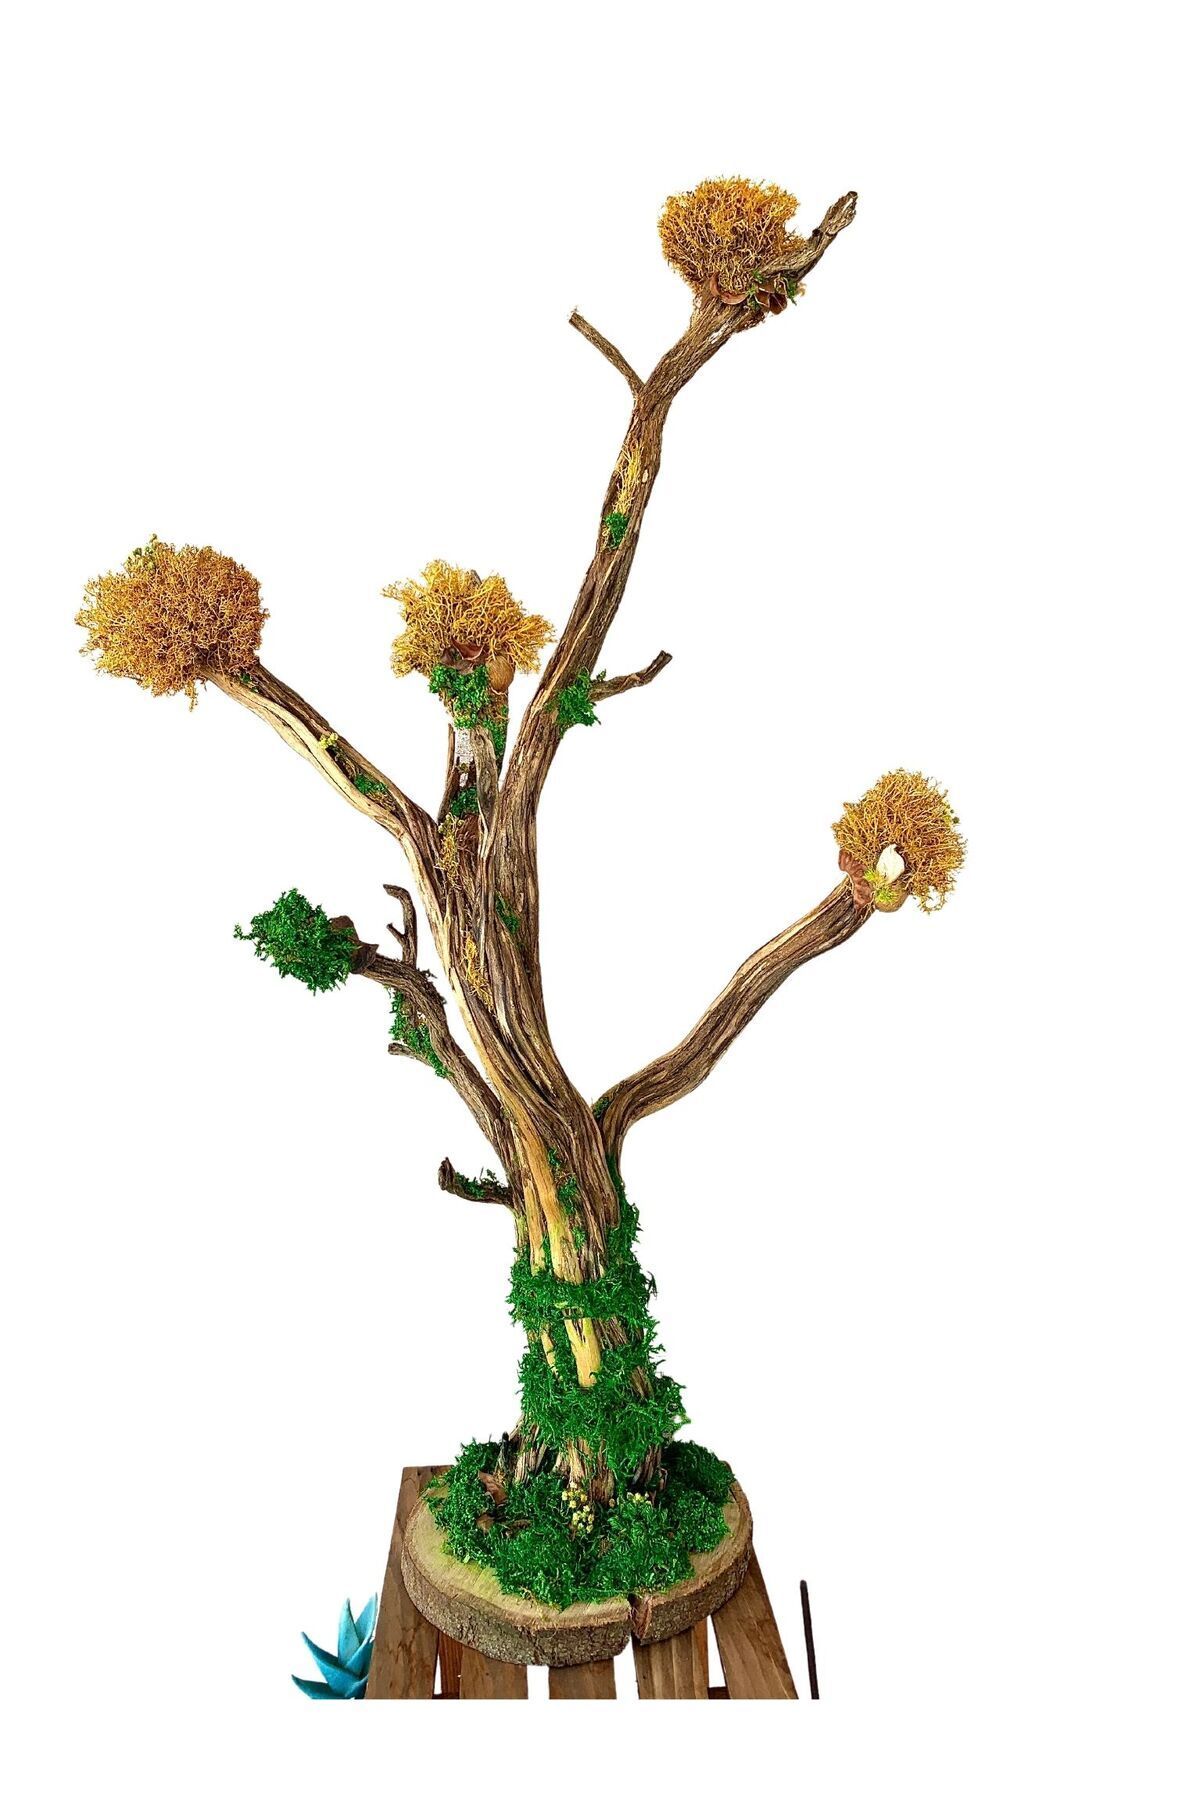 New Life Dekorasyon Ağaç Dalı Tasarım Şoklanmış Canlı Yosun Ev Dekorasyonu, Kara Yosunu, Çiçek süsleme Masa Dekoru